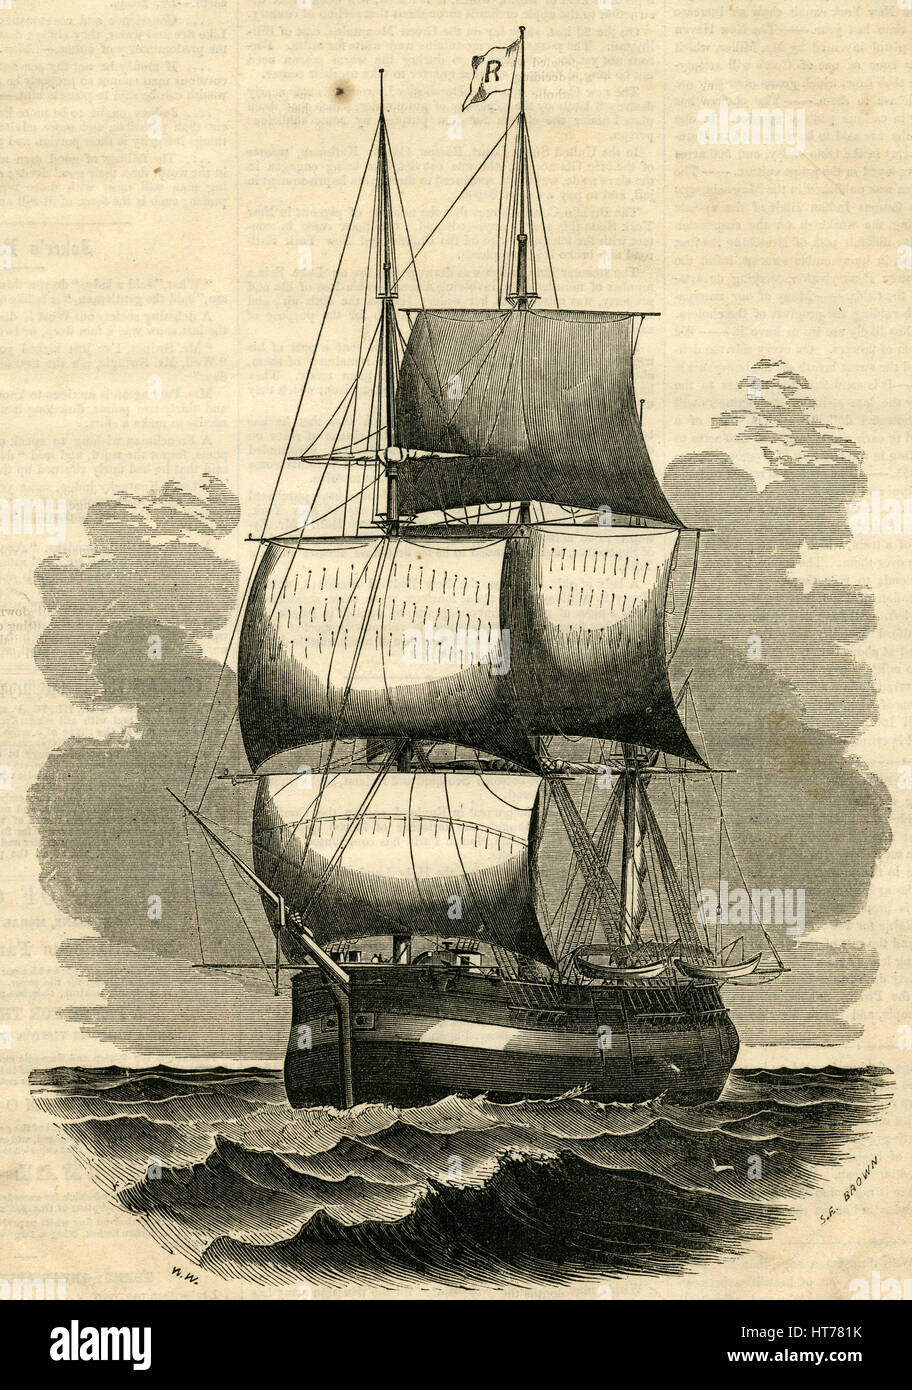 Antiken 1854 Gravur, "Schiff Maria von New Bedford, das älteste Schiff in den Vereinigten Staaten." Sie entstand an der Stadt von Pembroke, jetzt genannt Hanson, für ein Privateer während des Unabhängigkeitskrieges. Sie wurde von William Rotch, eines Kaufmanns aus Nantucket, danach von New Bedford, im Jahr 1783, gekauft und im gleichen Jahr machte sie eine Reise nach London mit einer Ladung von Öl. Ihre Registrierung ist n. 1782 datiert; und sie ist daher in ihrem 70 / 3 Jahr. QUELLE: ORIGINAL GRAVUR. Stockfoto